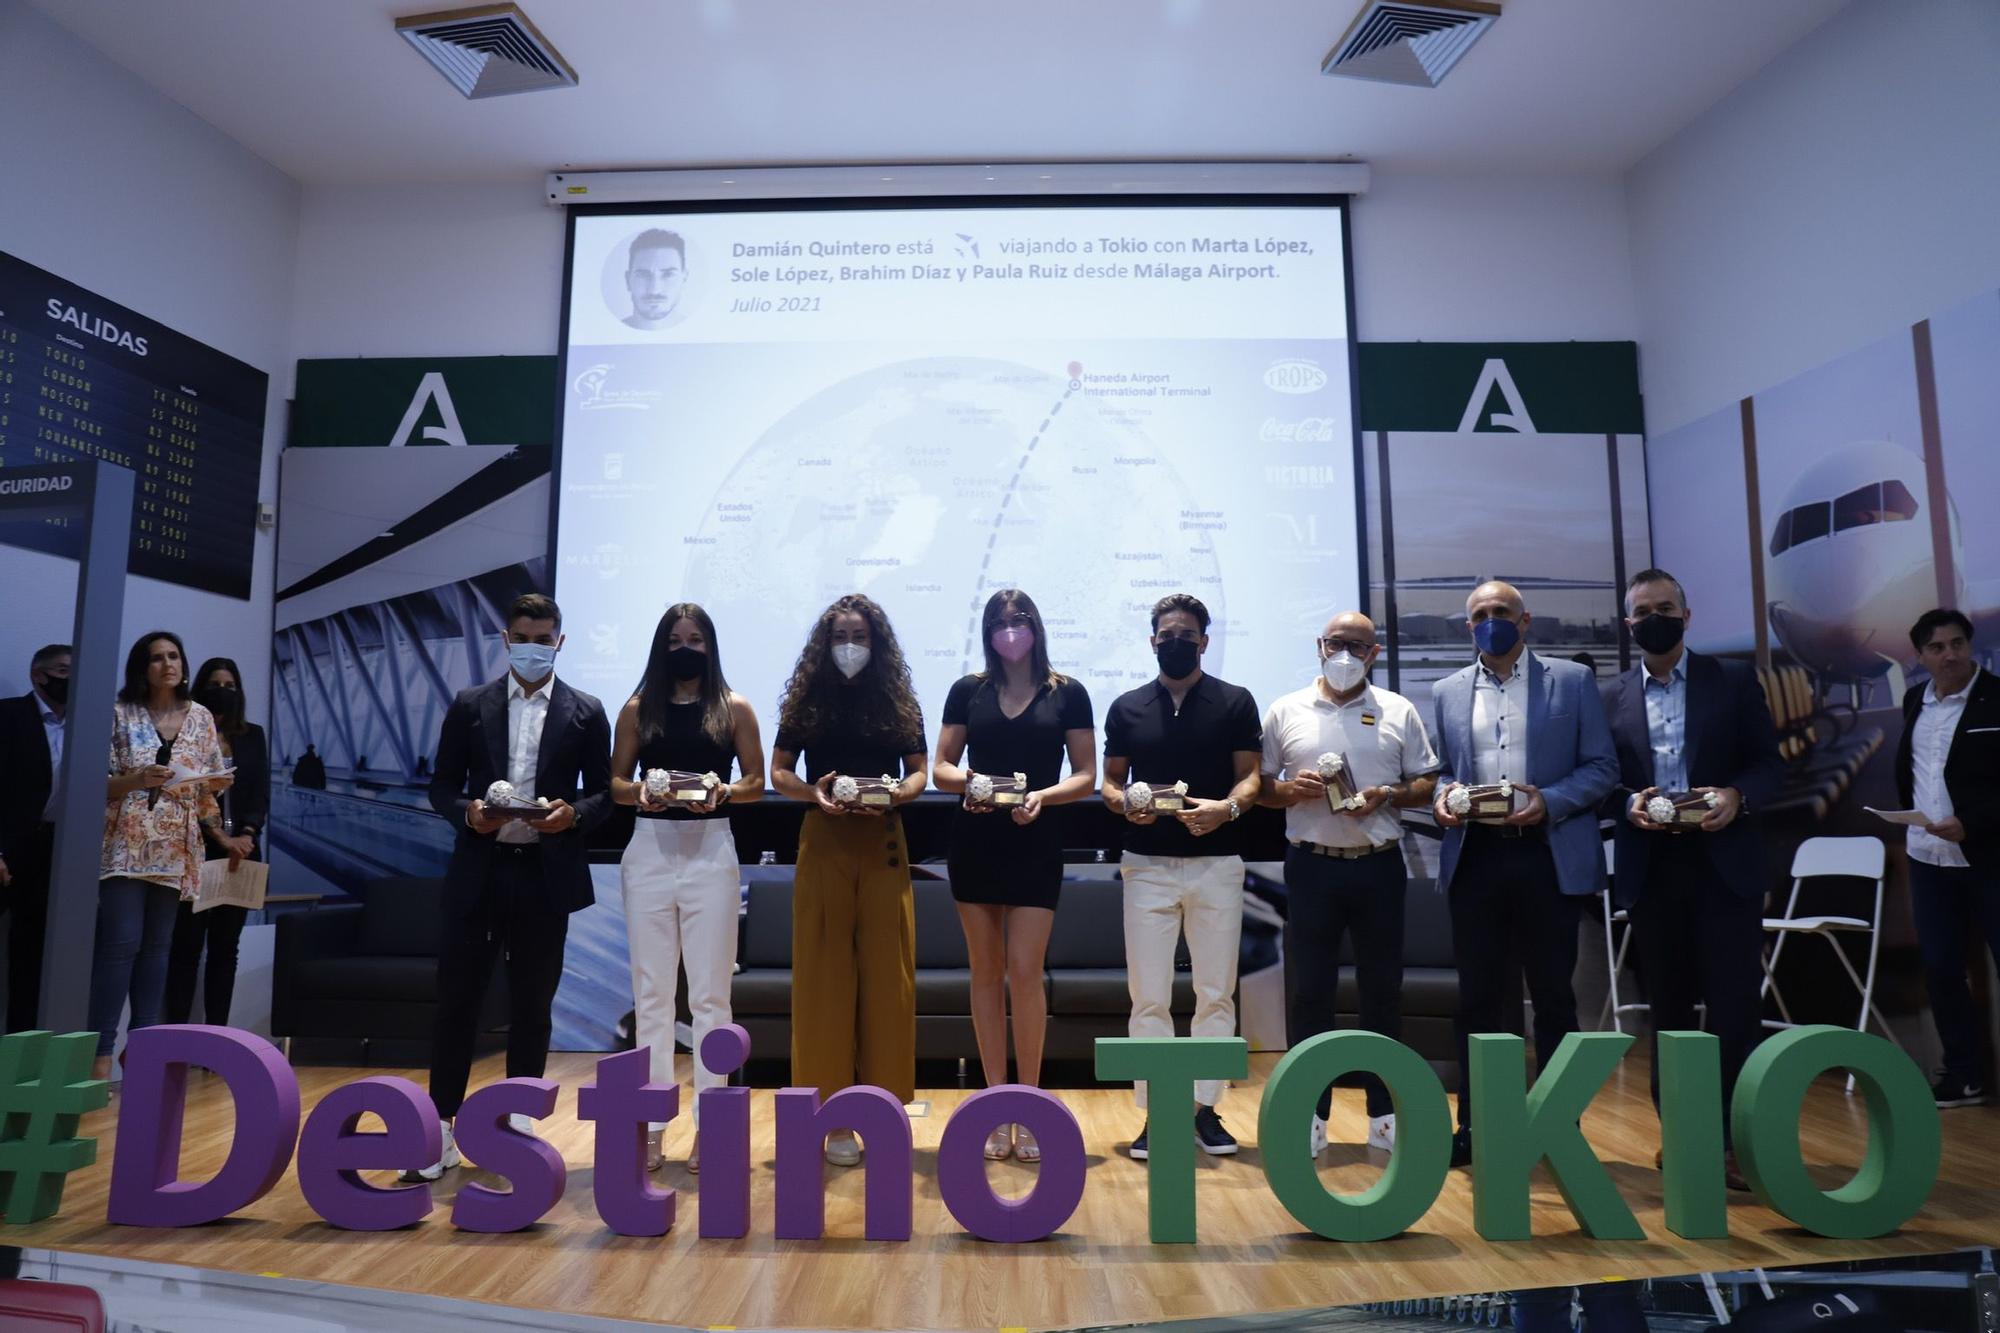 Gala de los deportistas malagueños que viajarán a Tokyo 2020